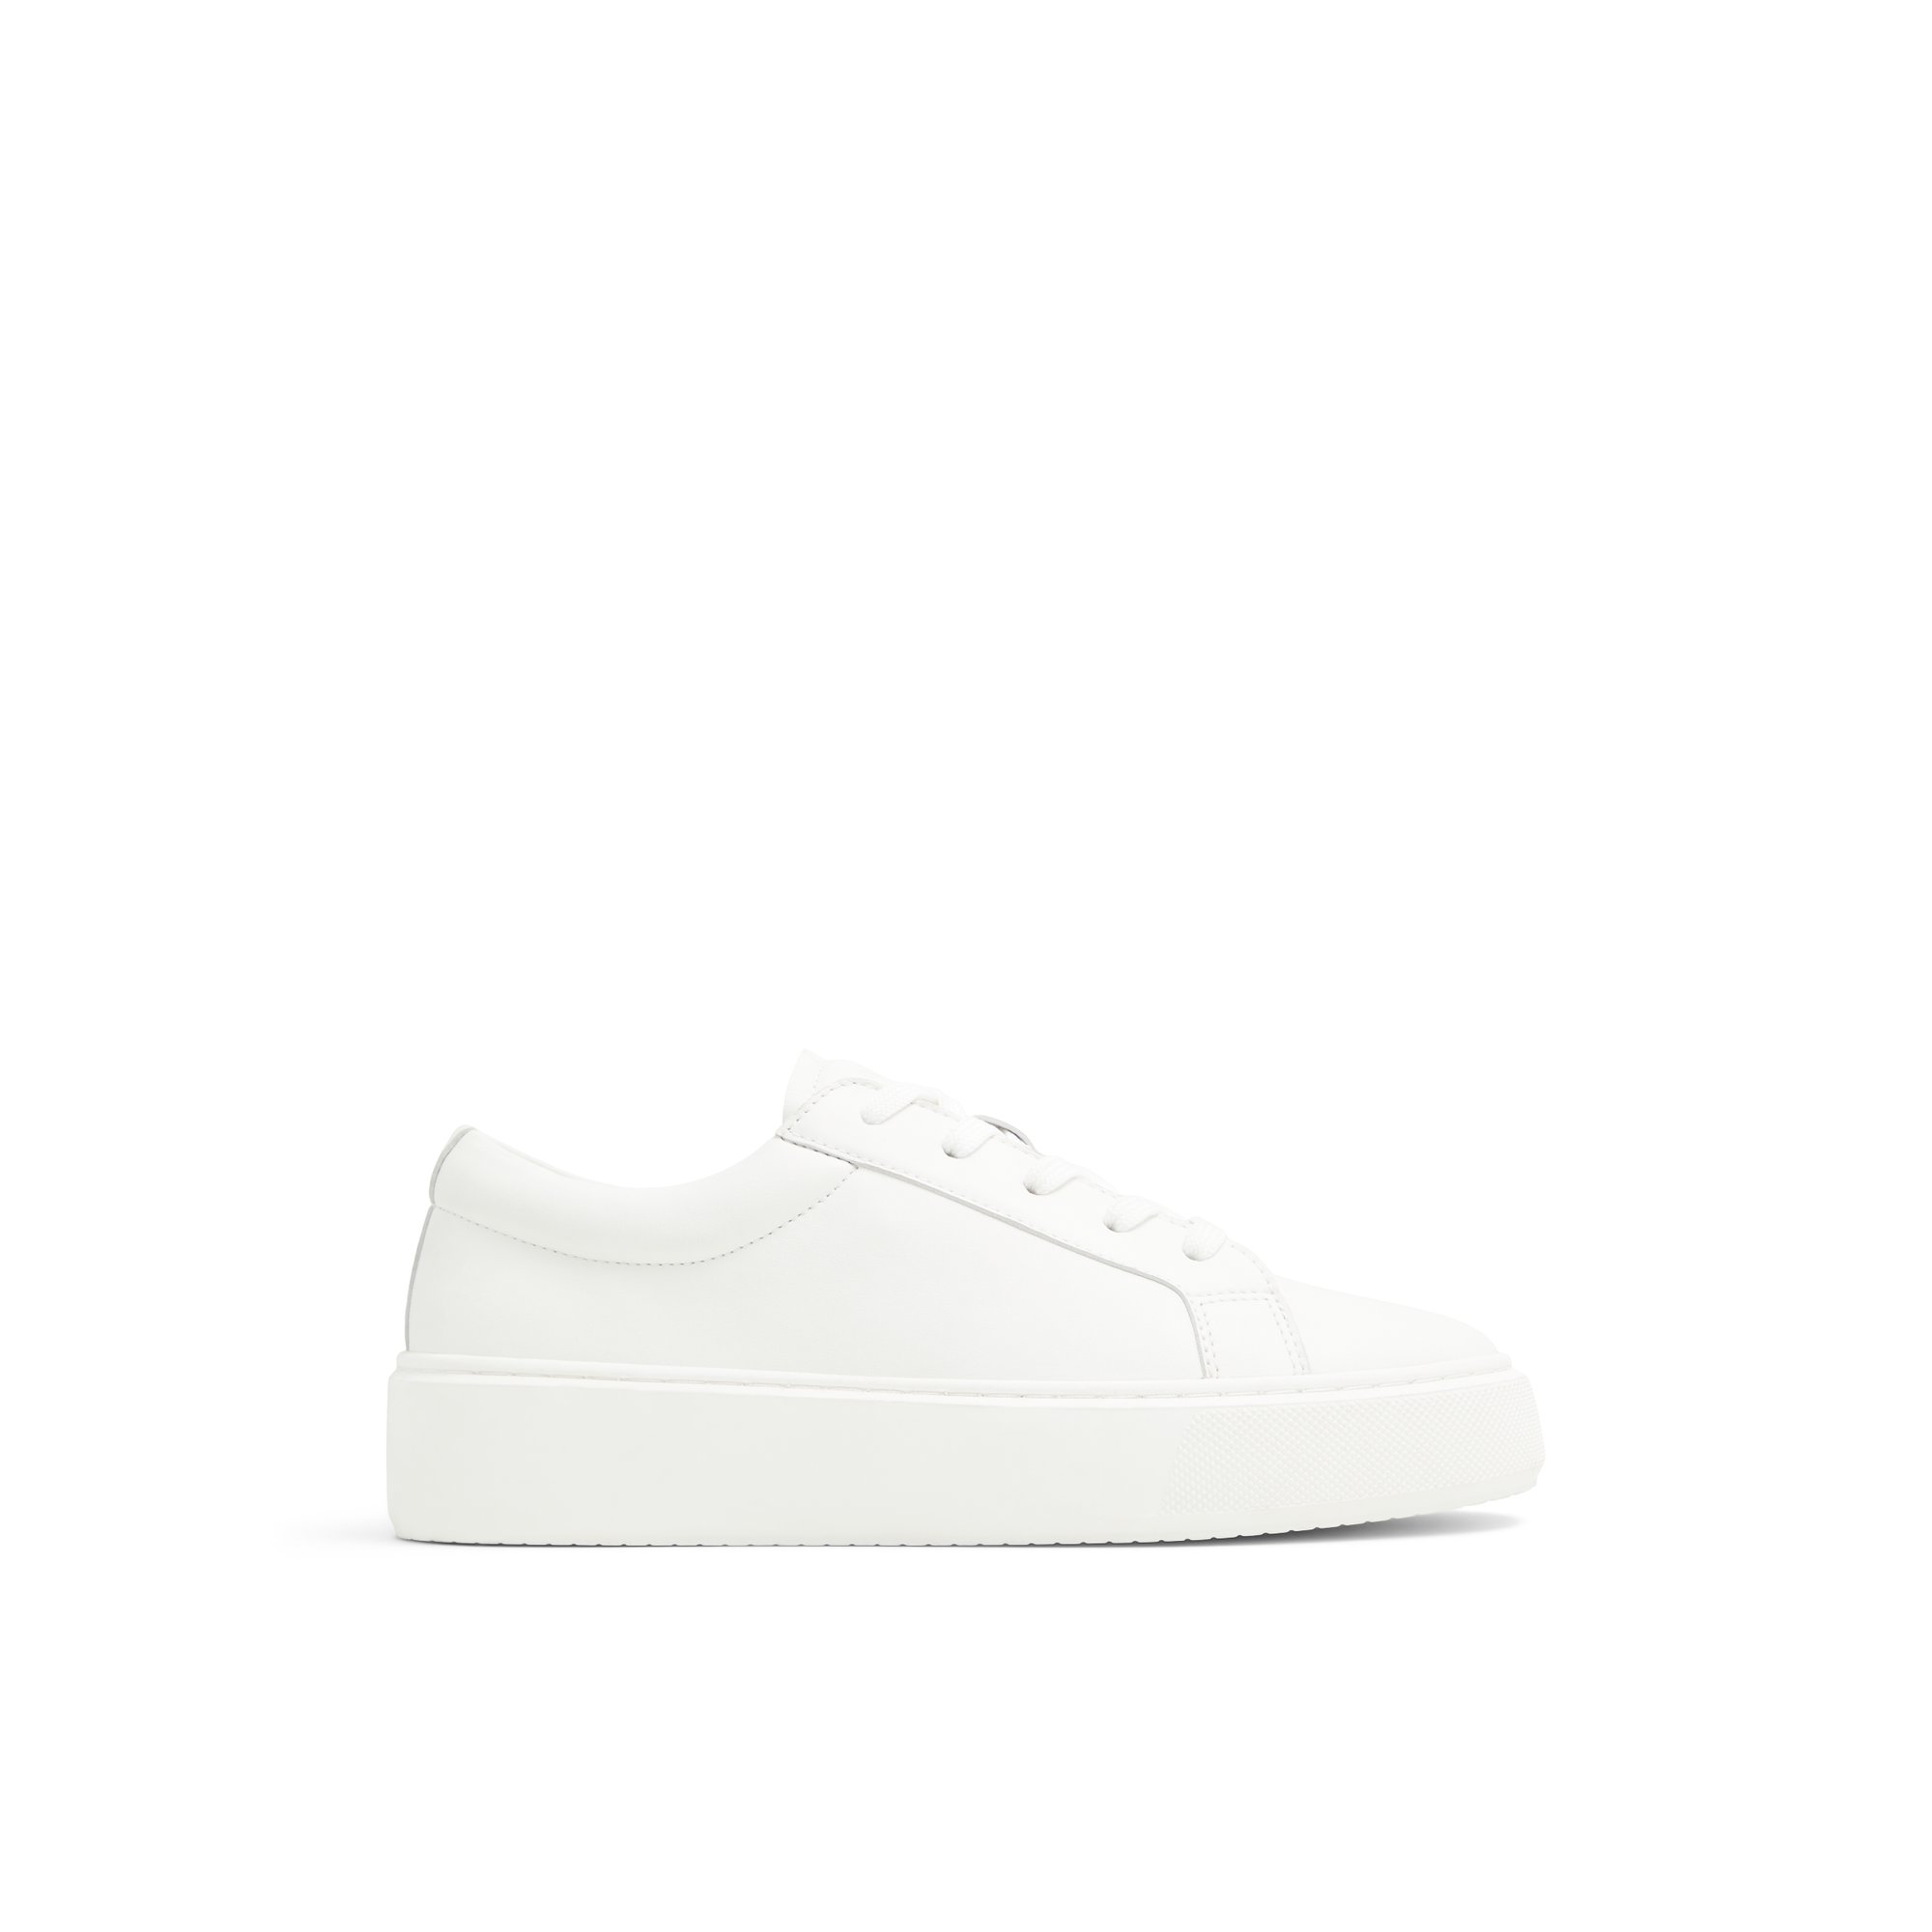 ALDO Hely - Women's Sneakers Low Top - White